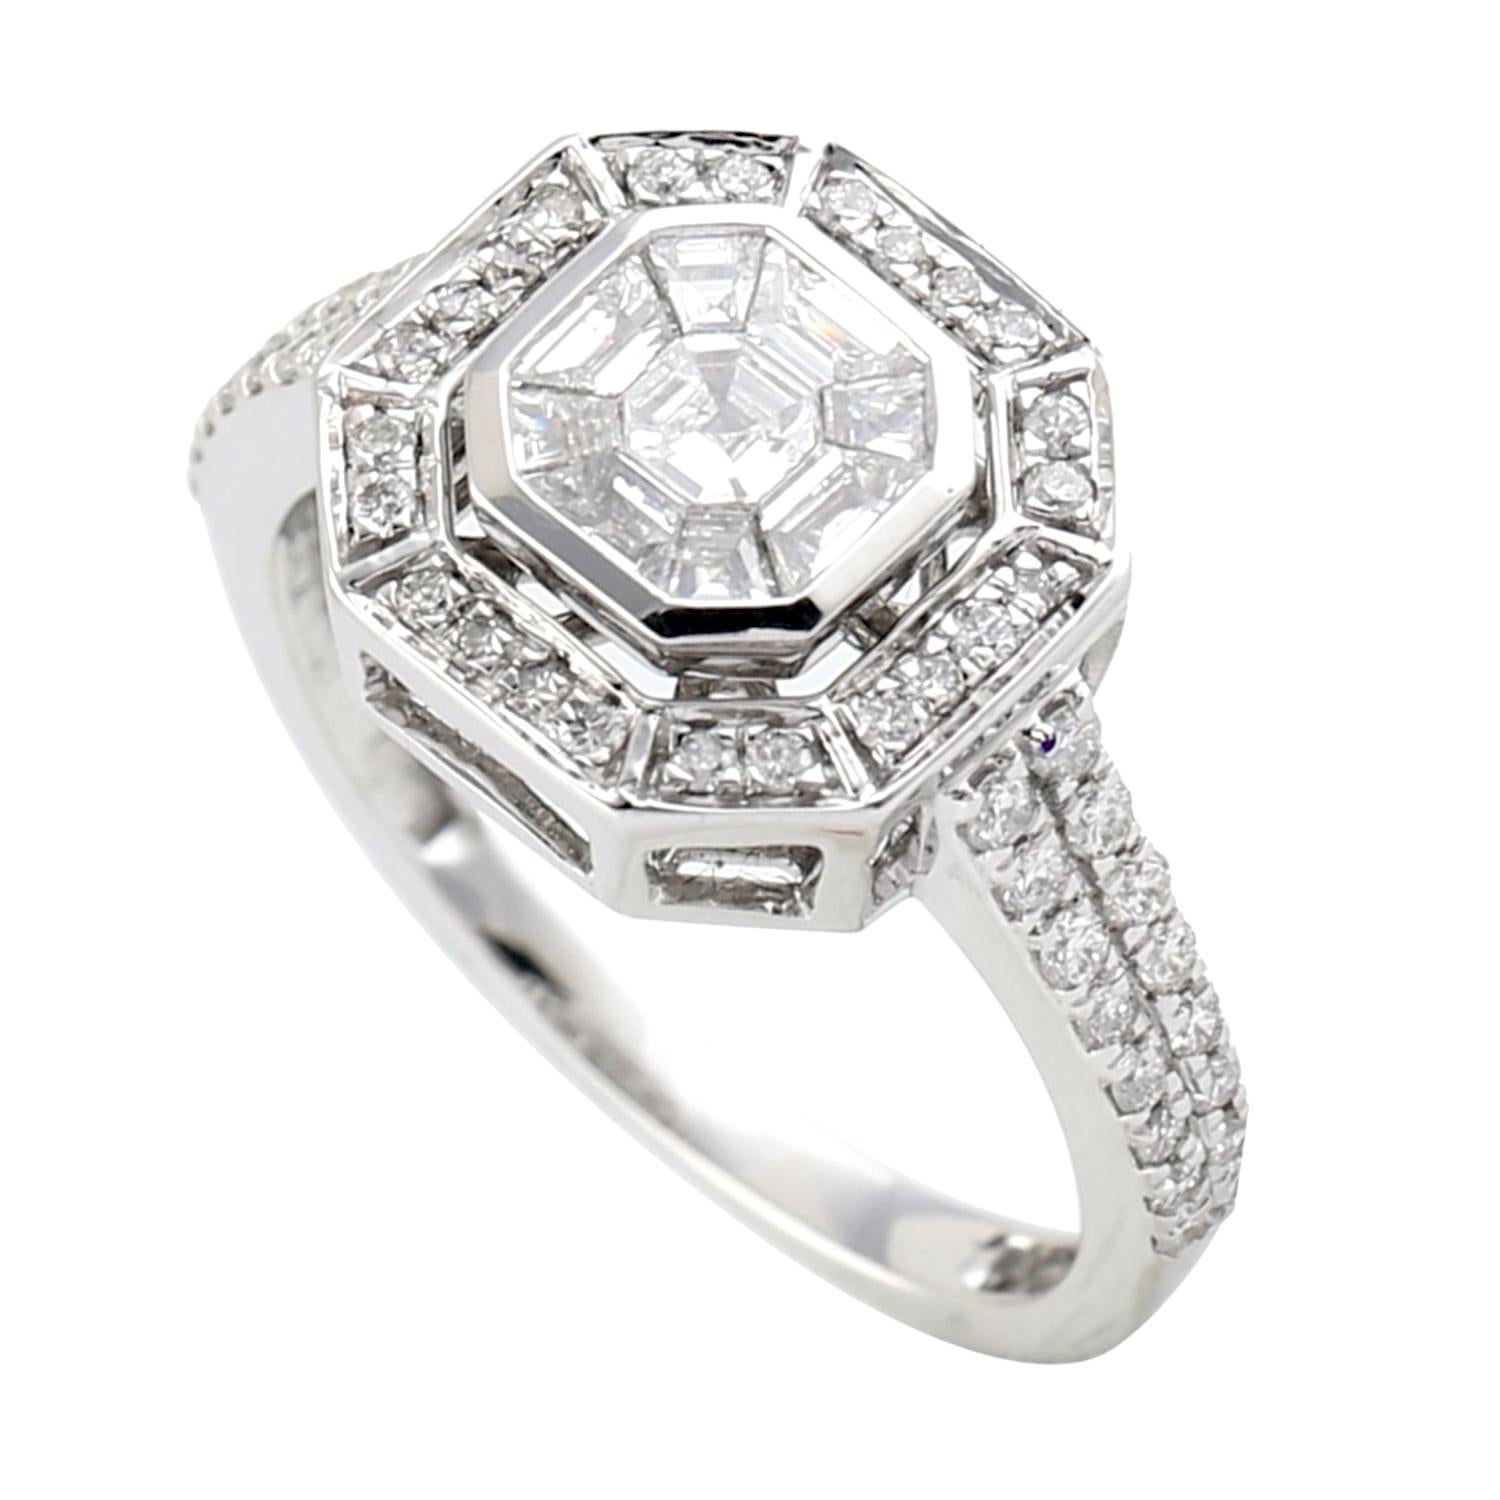 Princess Cut Designer Princess Set Diamond Ring in 18k White Gold